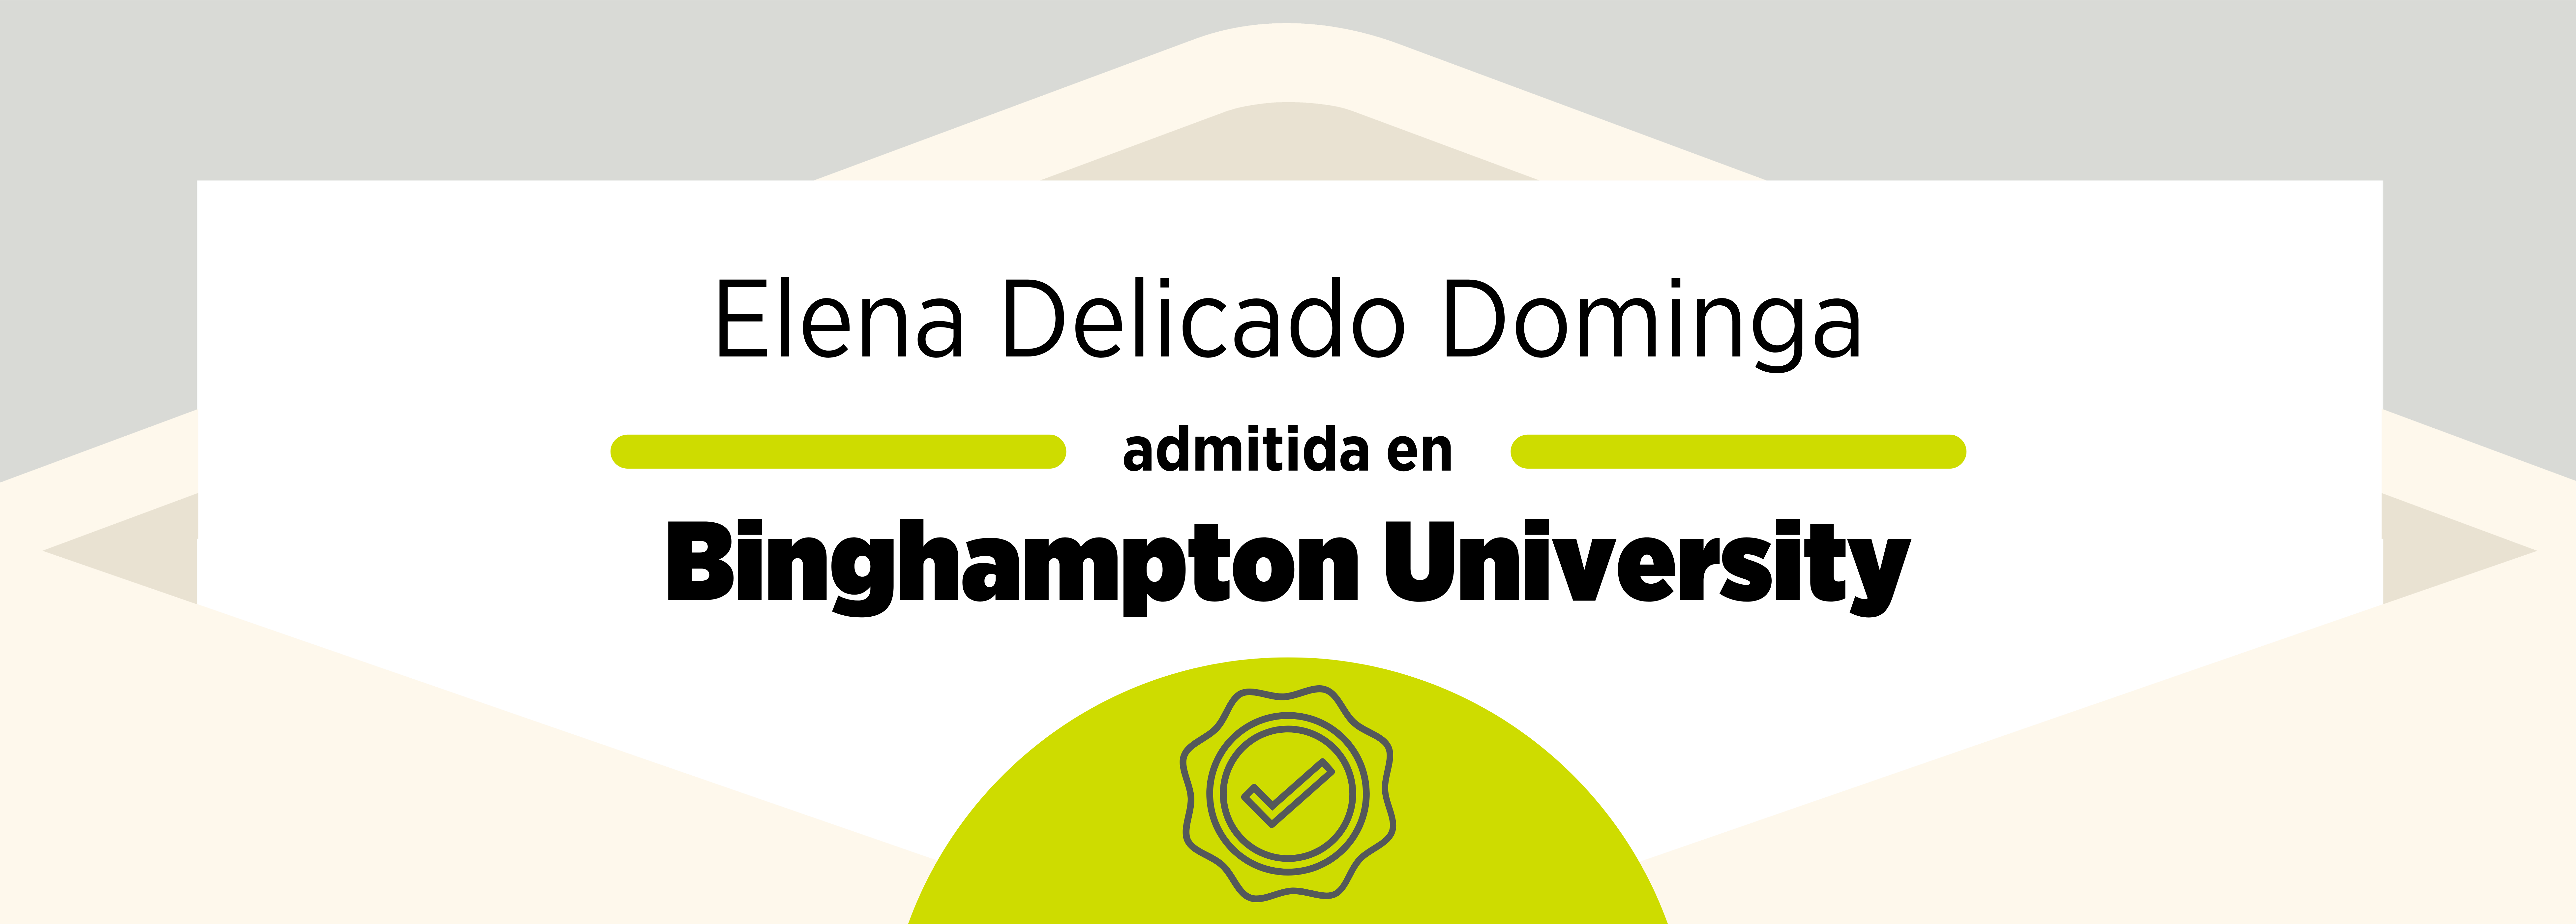 Admissions 2020: Elena Delicado Dominga & Binghampton University